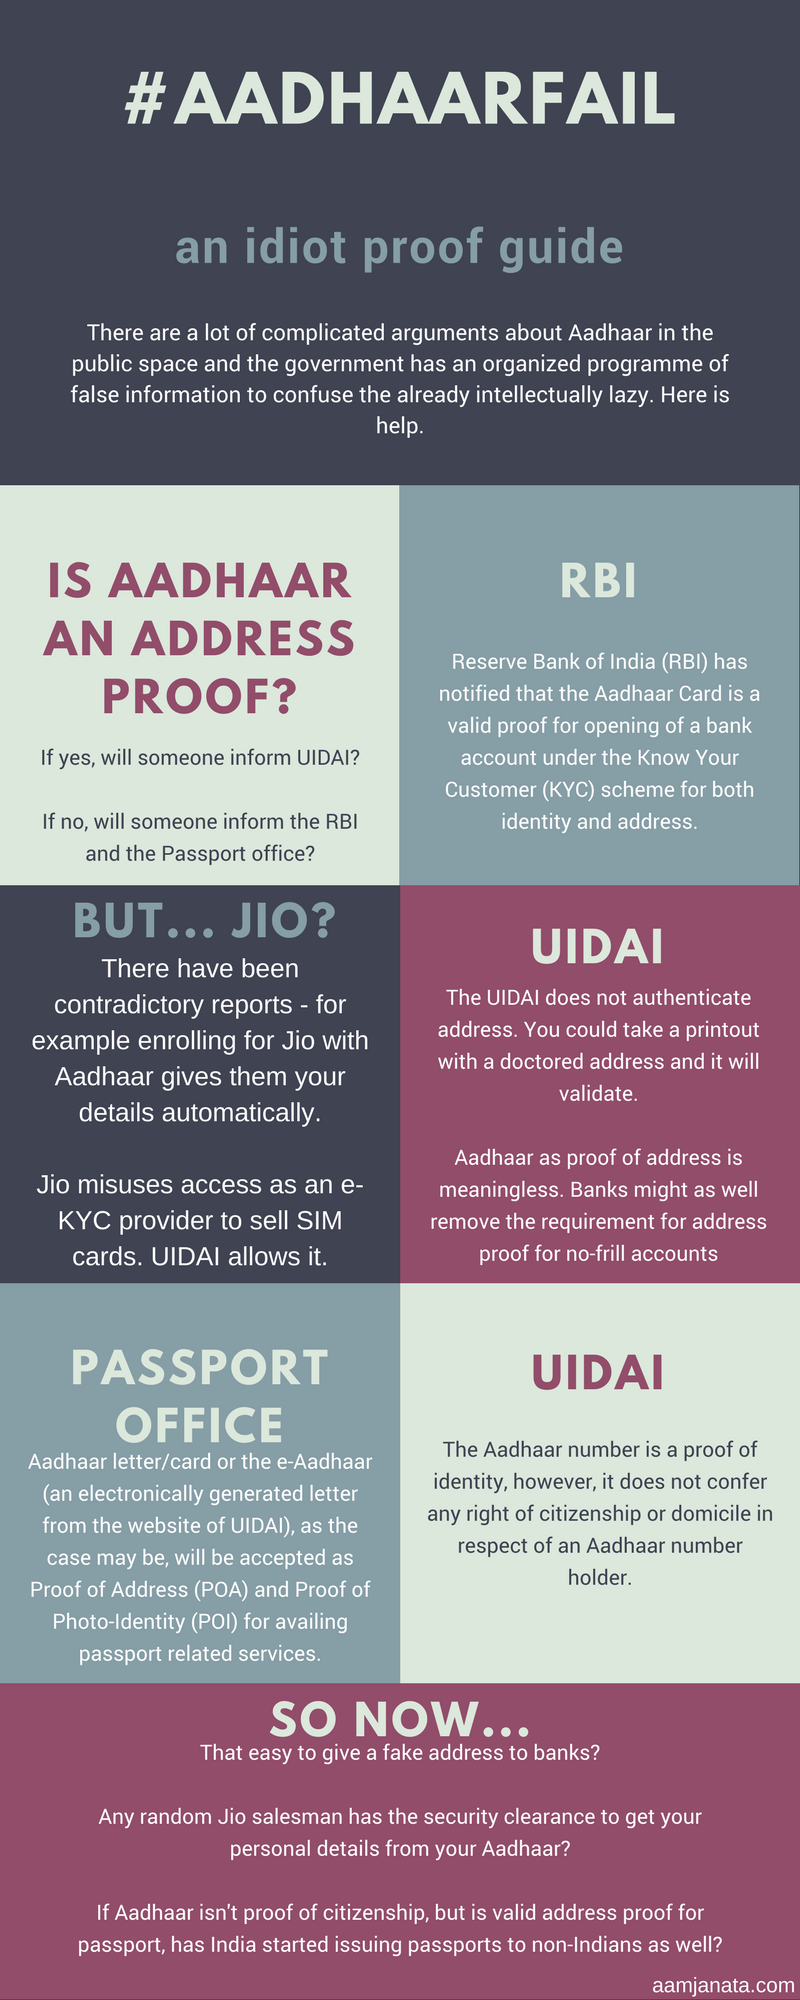 Aadhaar card and security risks